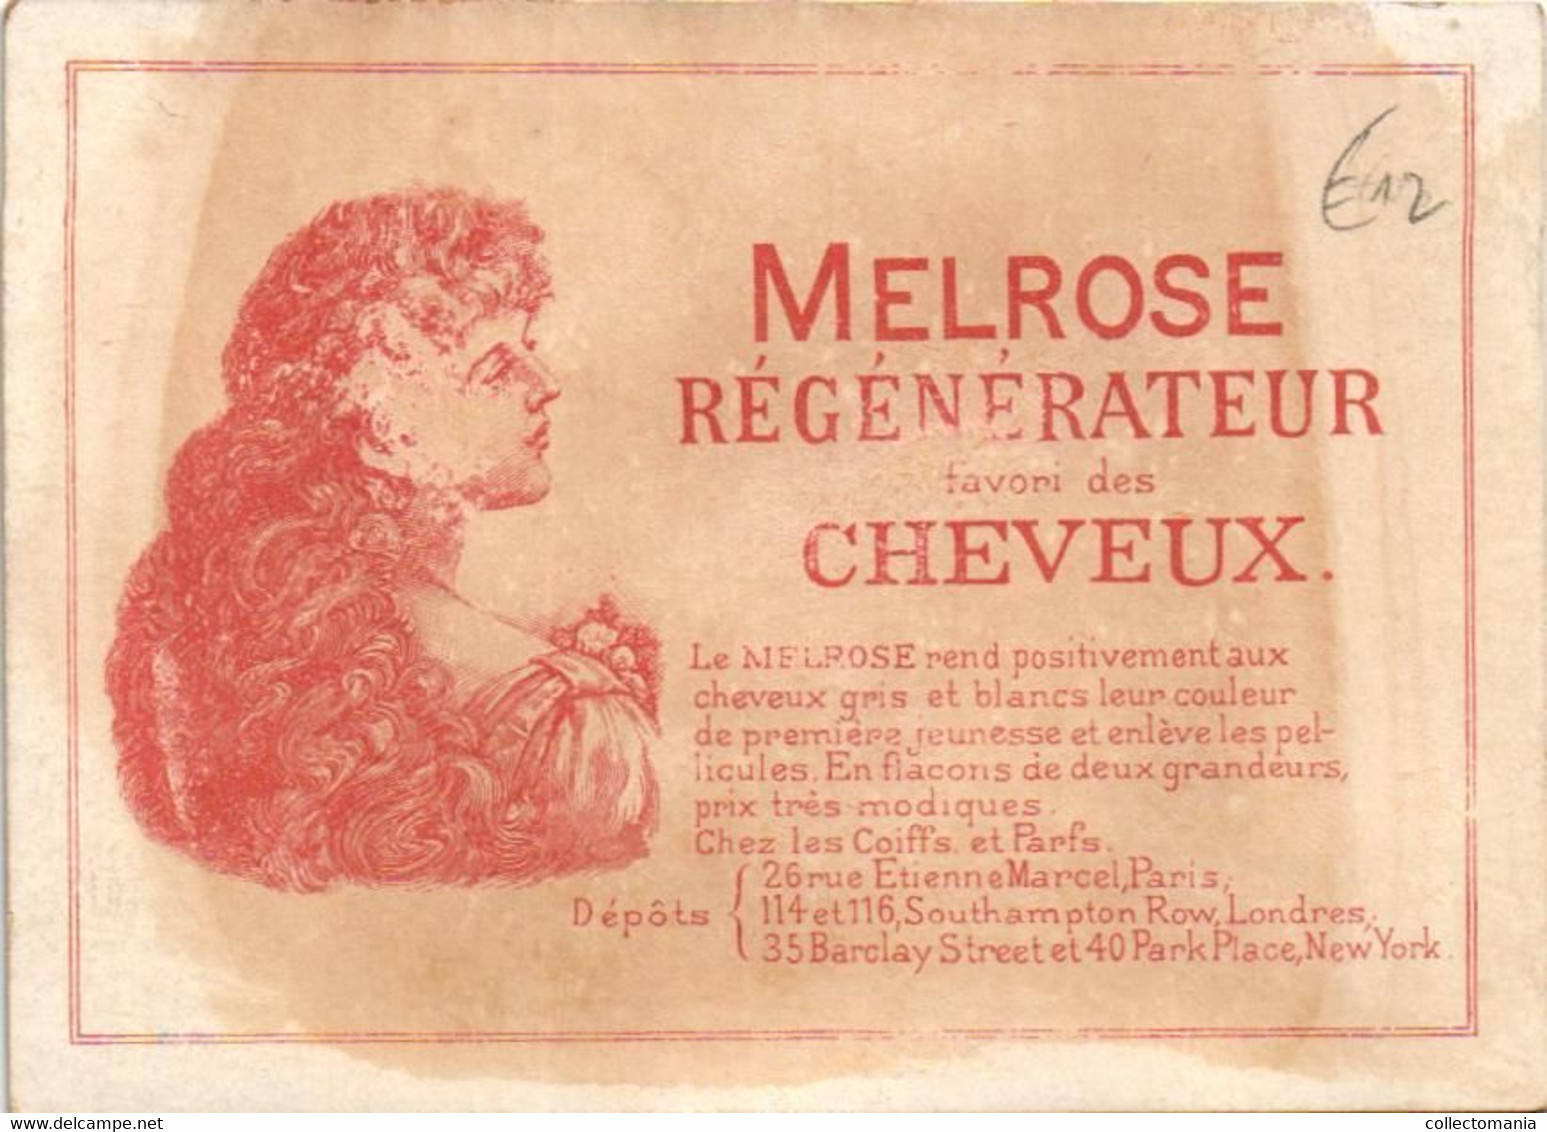 5 Cards MELROSE Régénérateur favori des Cheveux   Rue Etienne Marcel Paris Litho chromos parfum haar - hair perfume